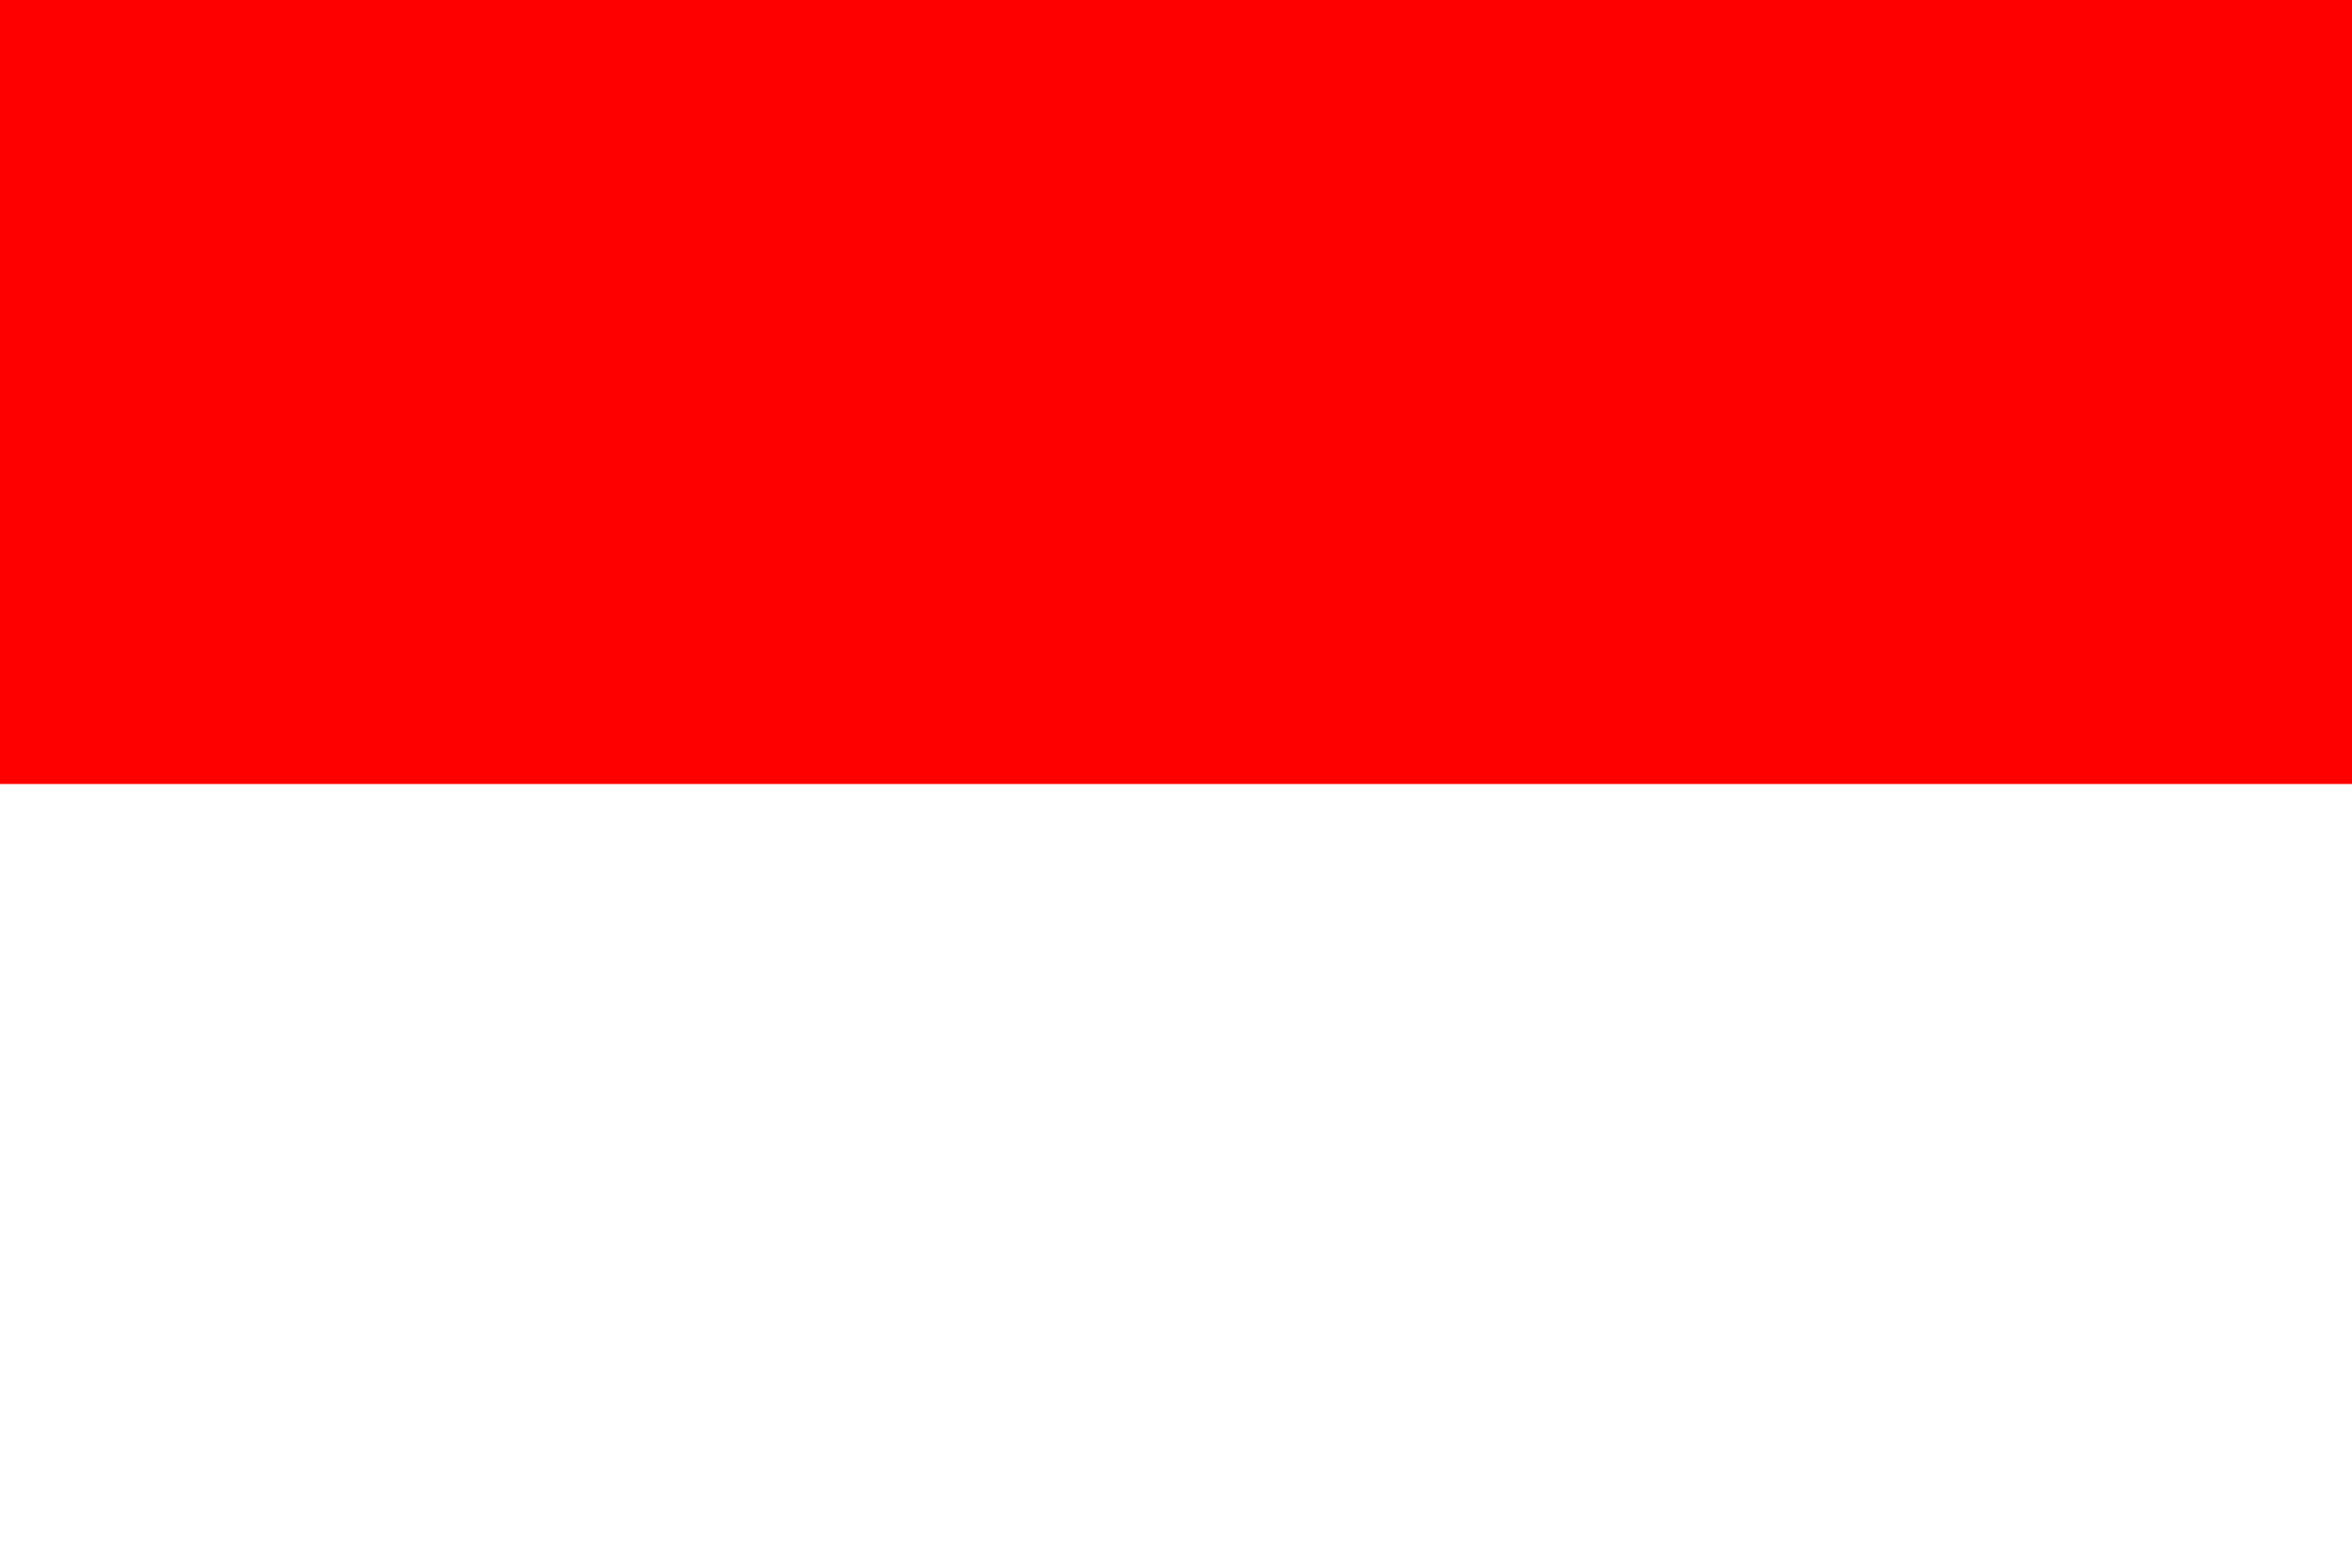 インドネシア共和国 flag